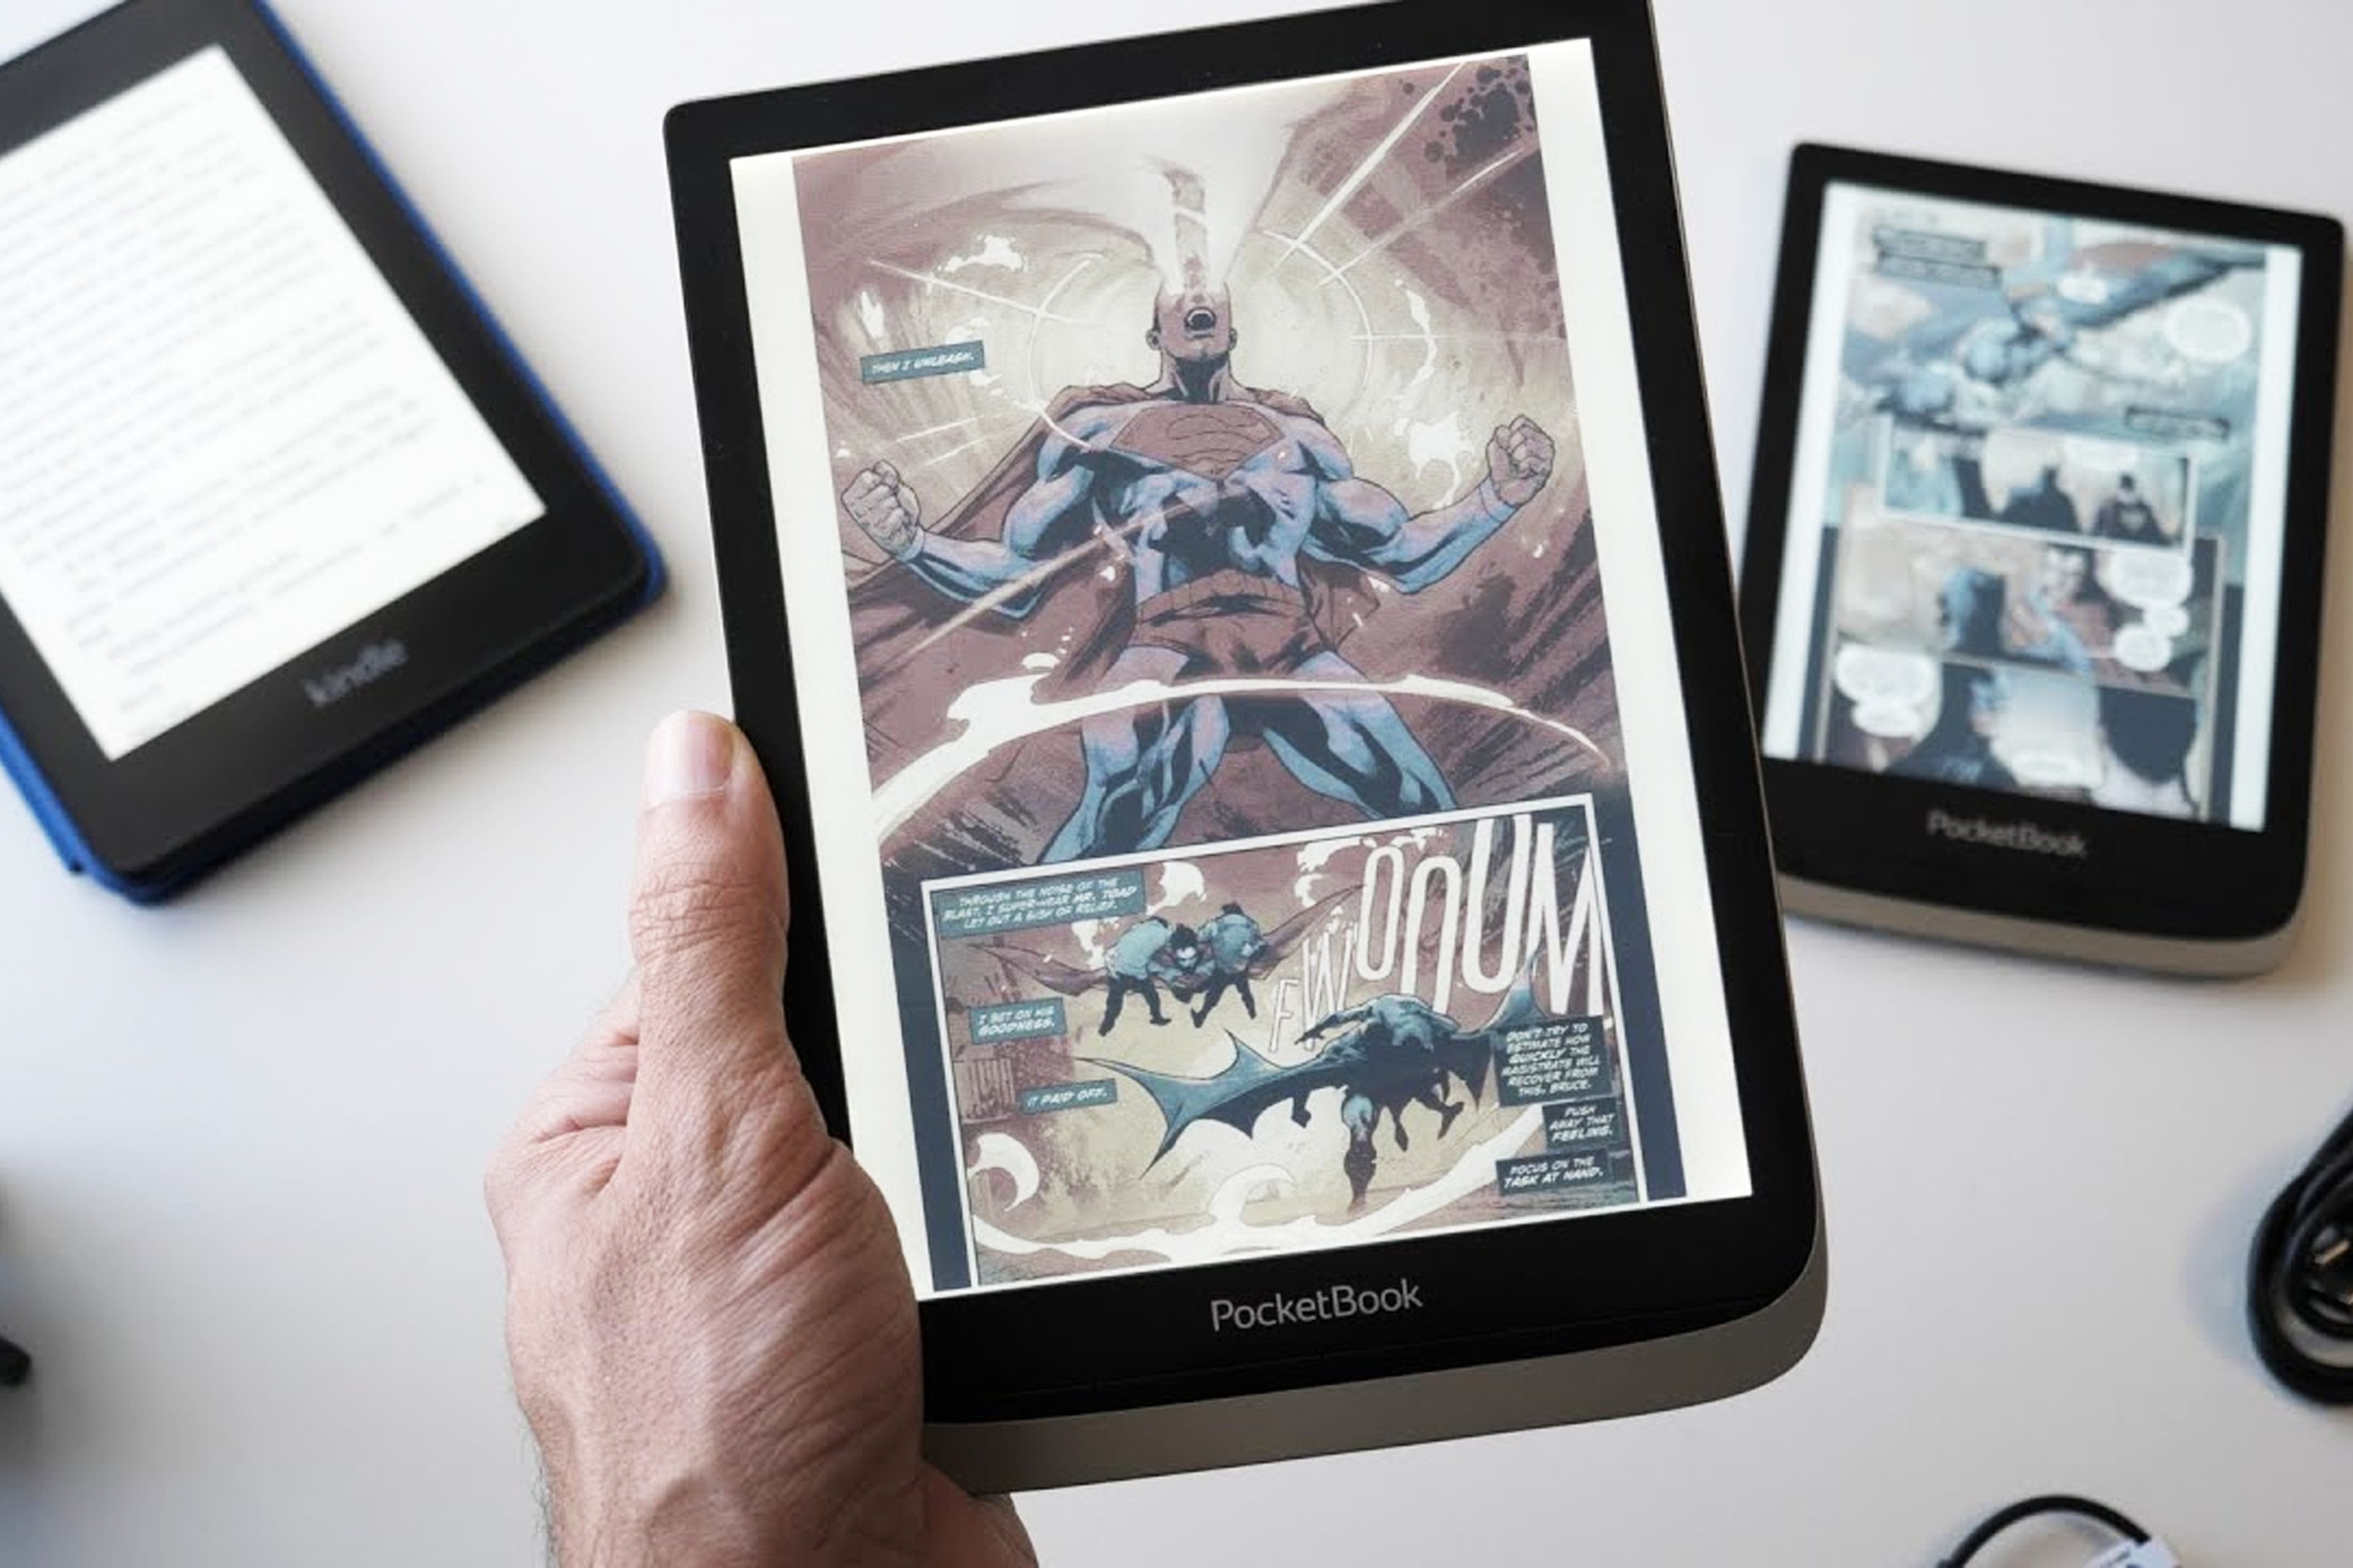 El nuevo Kindle de  es más compacto, ligero y versátil